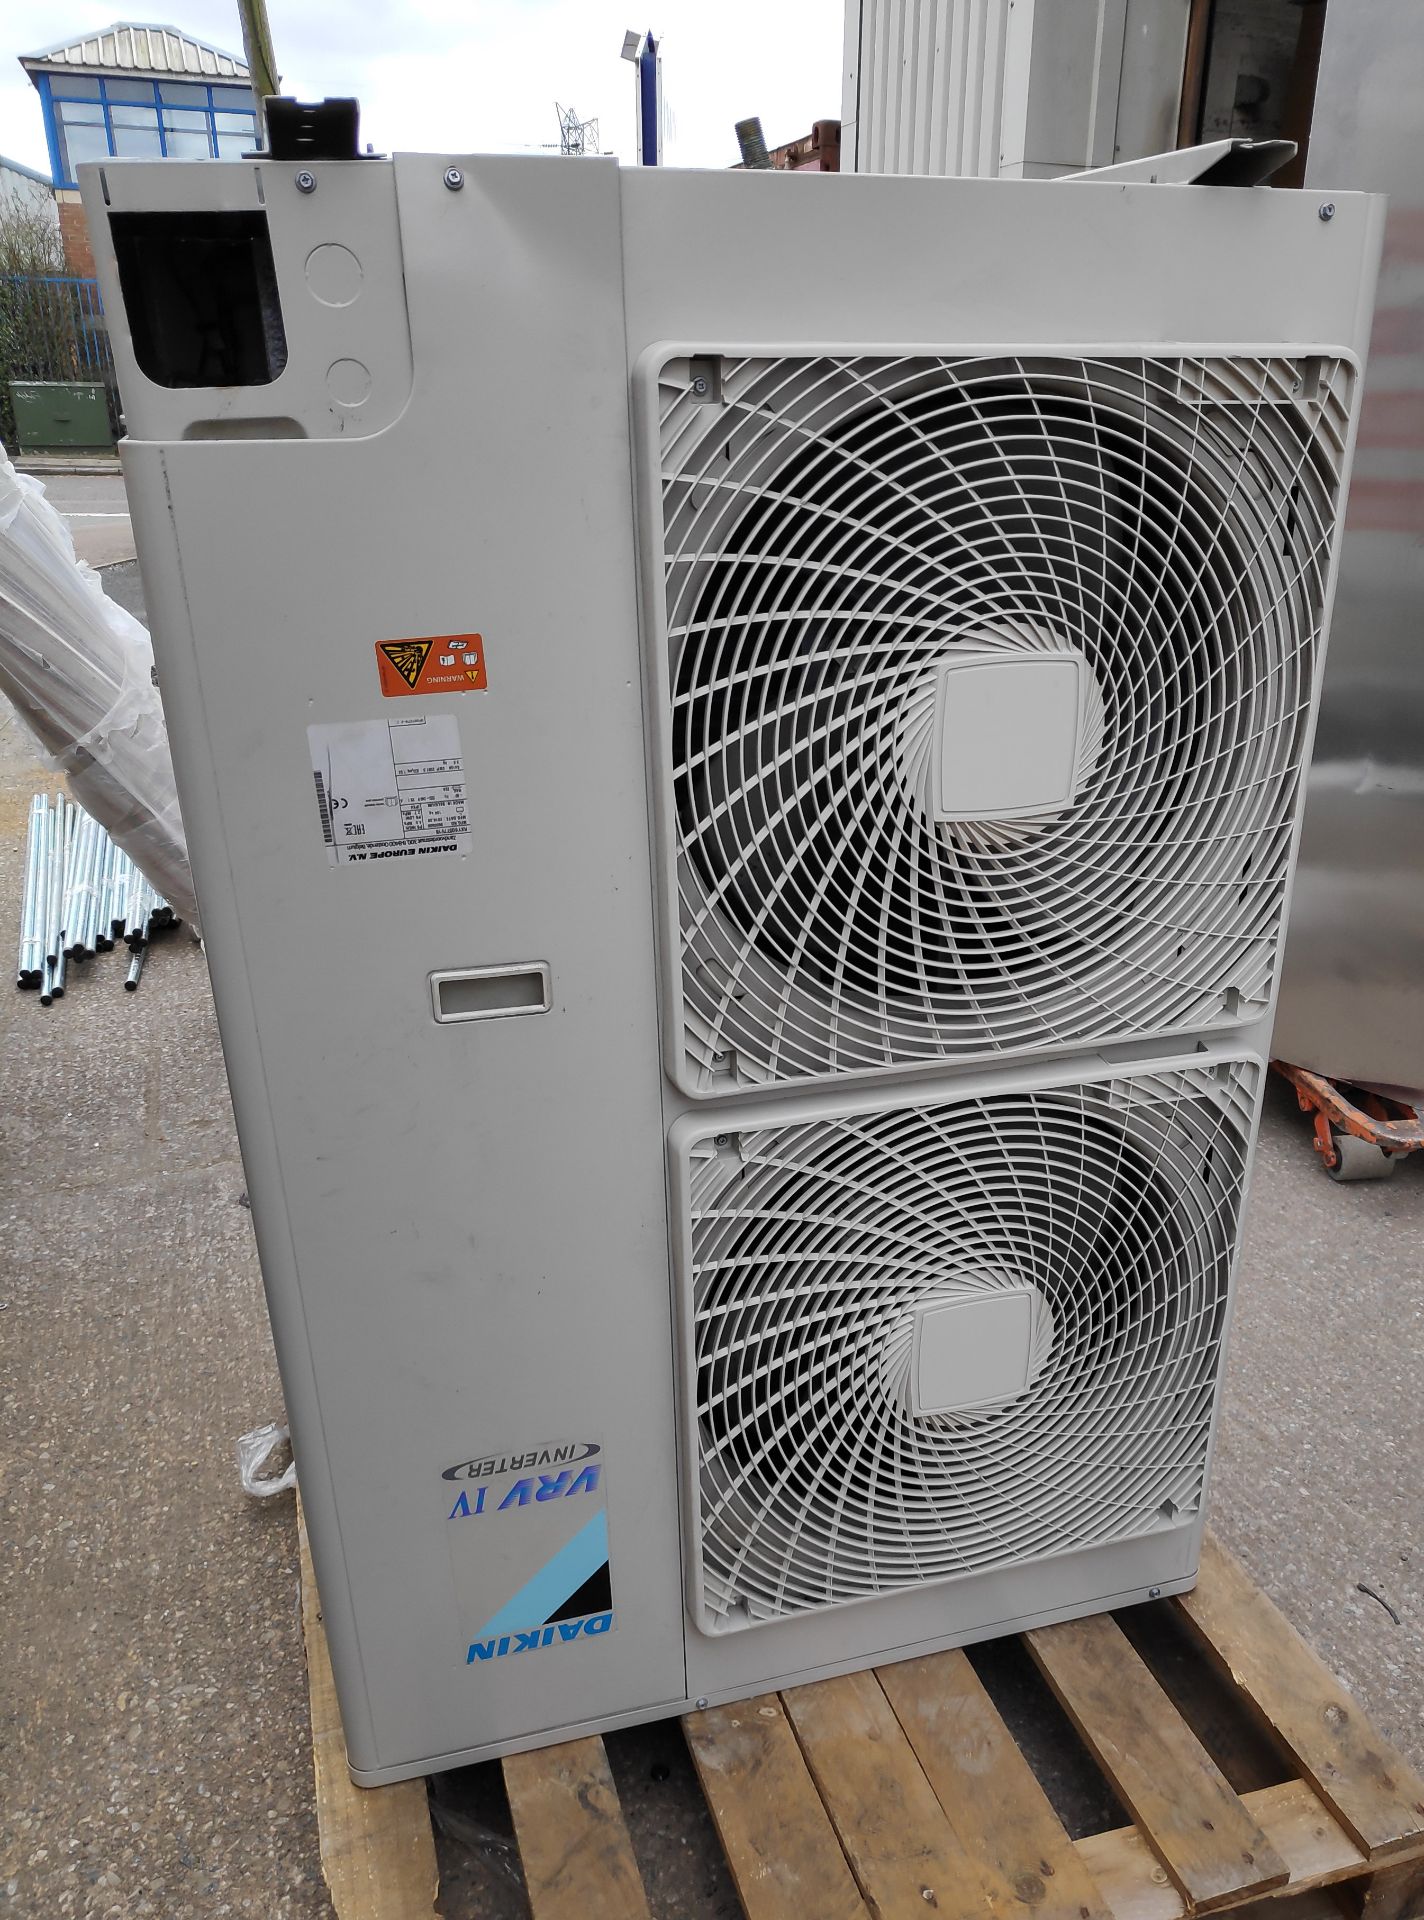 2 x Daikin VRV IV S-Series Air Conditioner Inverter Heat Pumps - Model: RXYSQ5T7V1B - JMCS114 - - Image 5 of 10